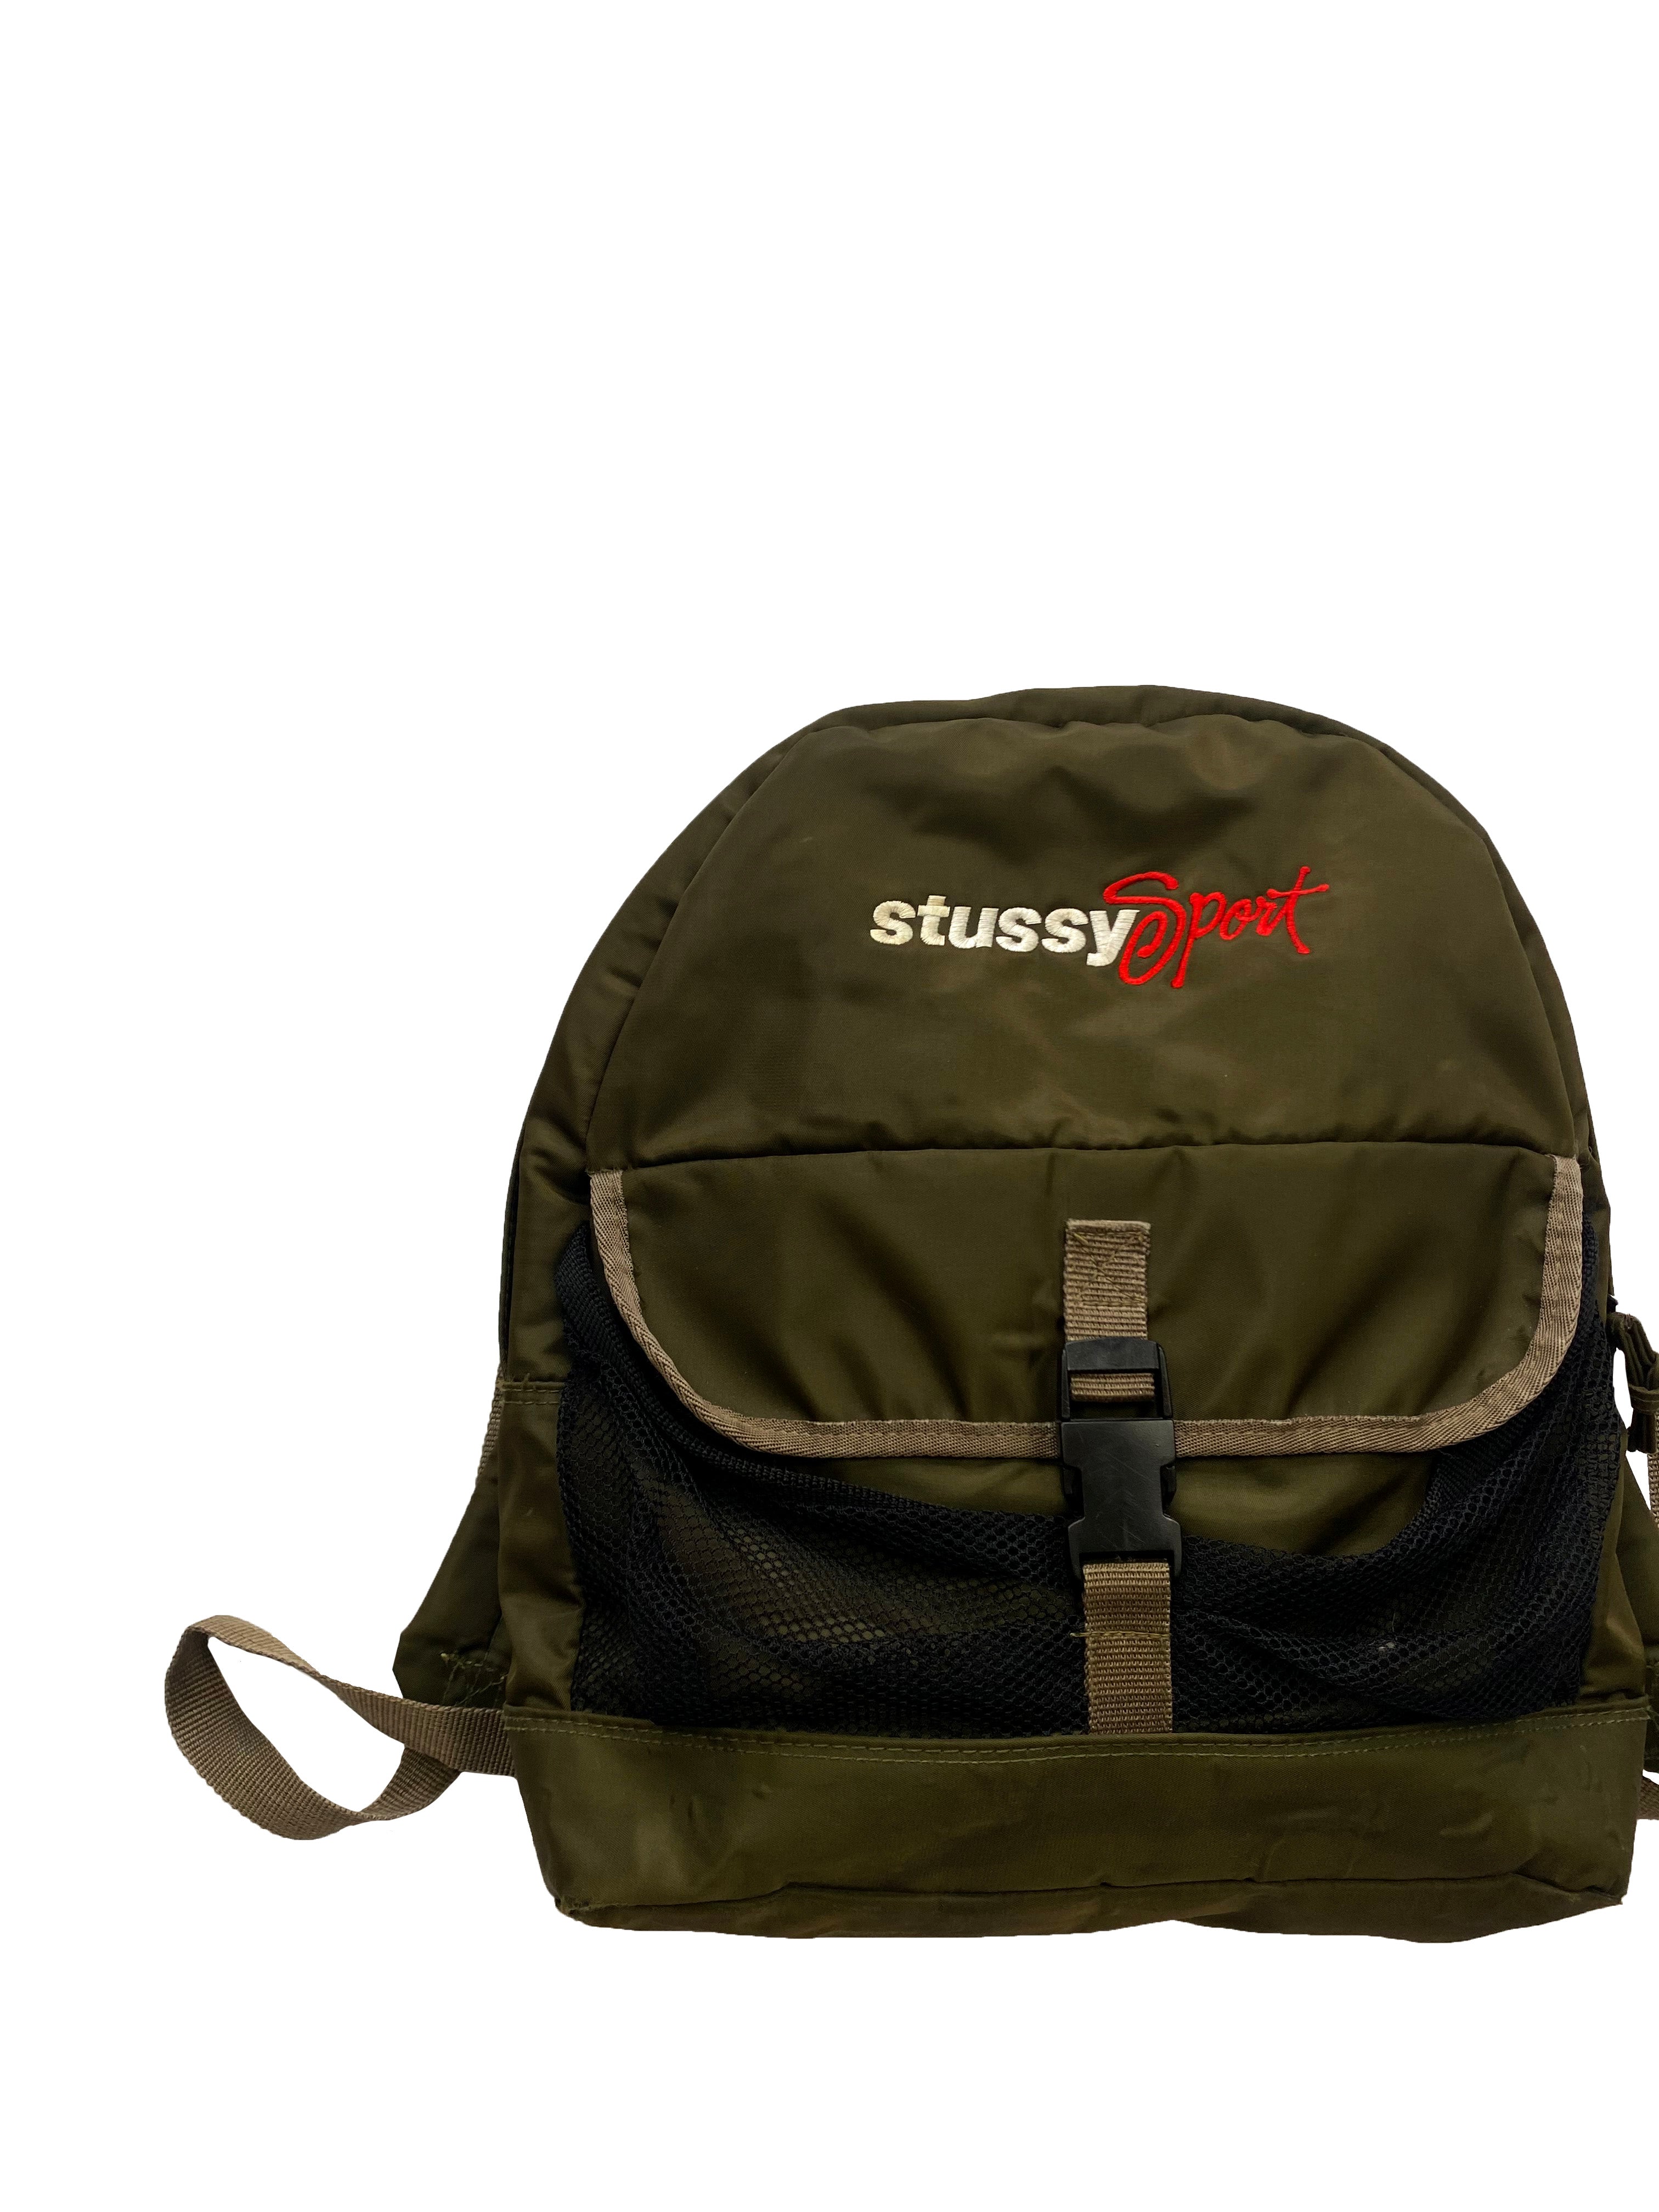 Stussy Sport Khaki Backpack 90's